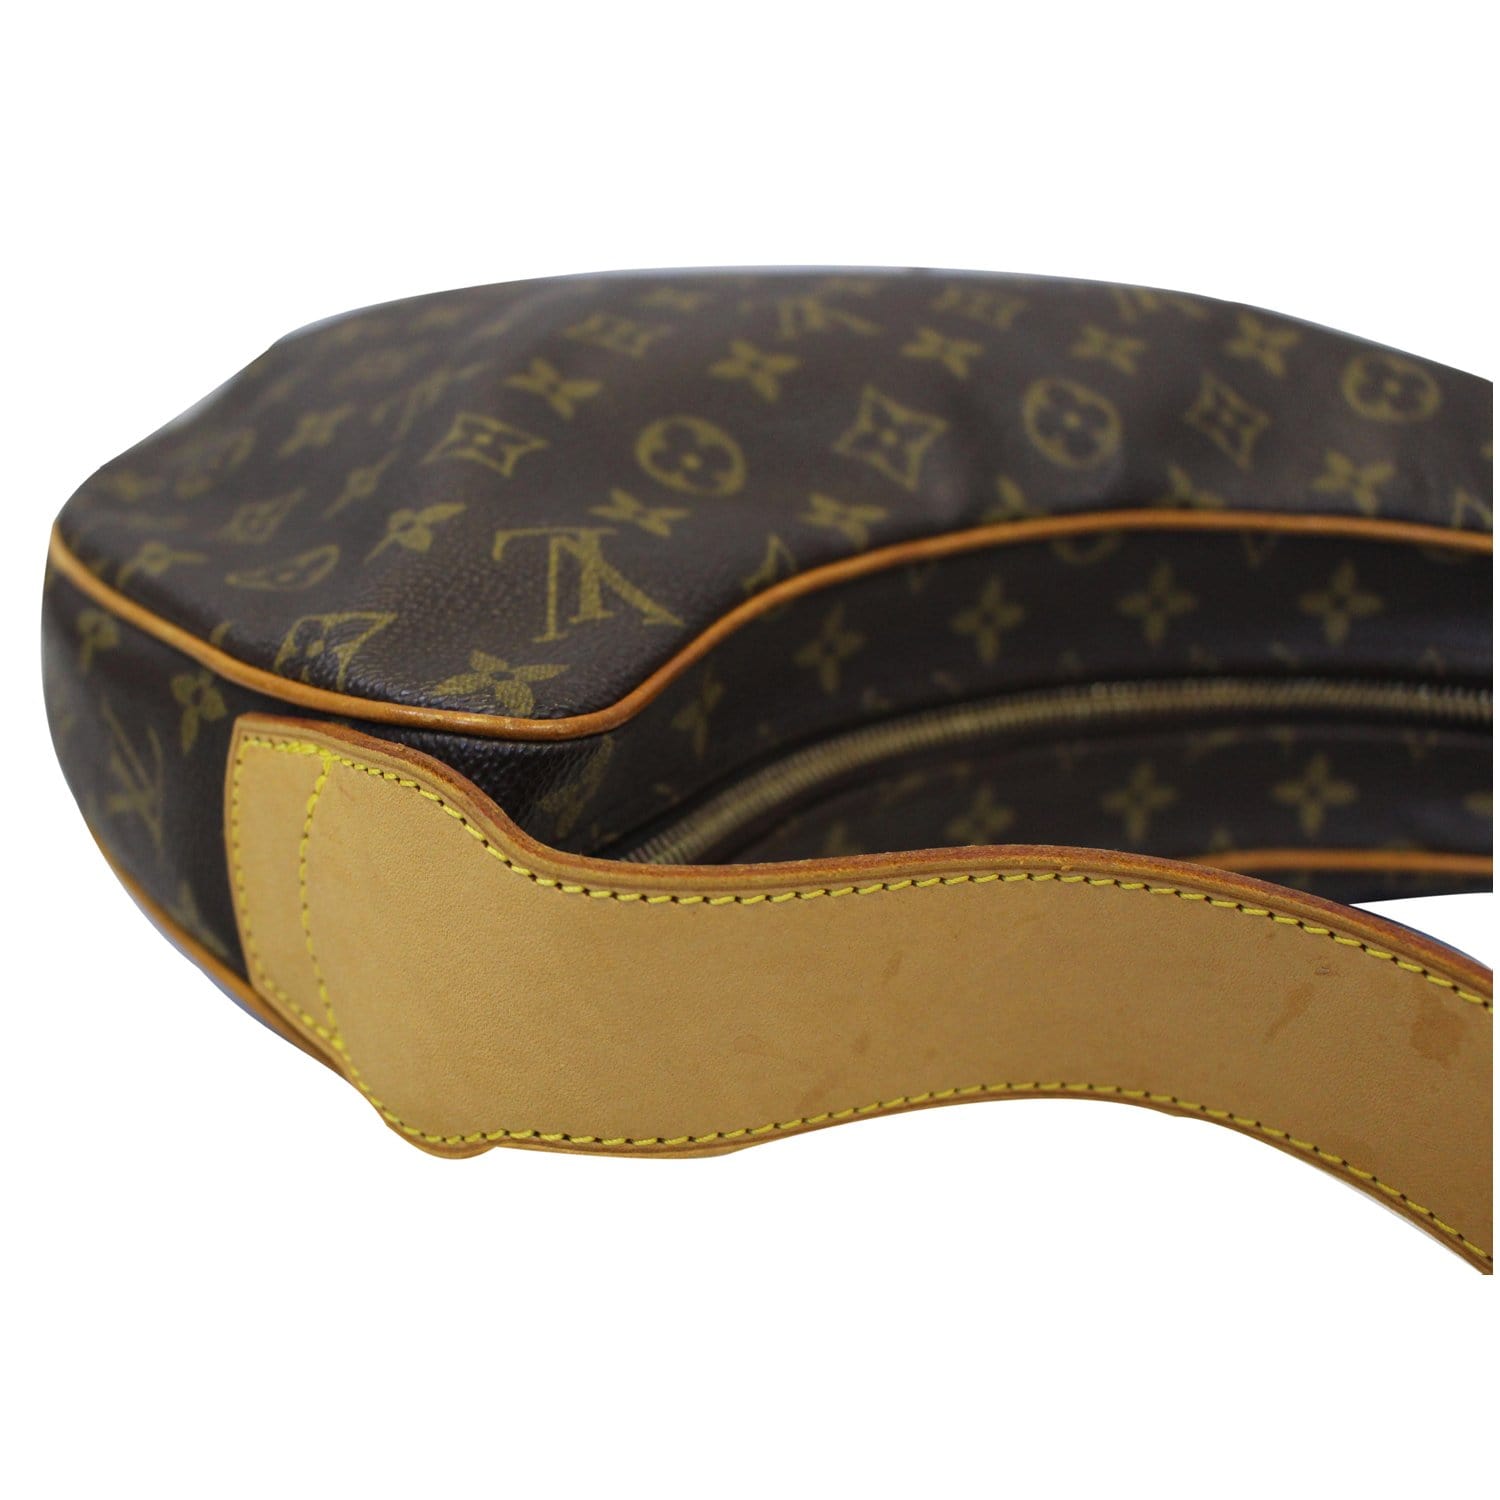 Louis Vuitton 2002 Pre-owned Croissant Shoulder Bag